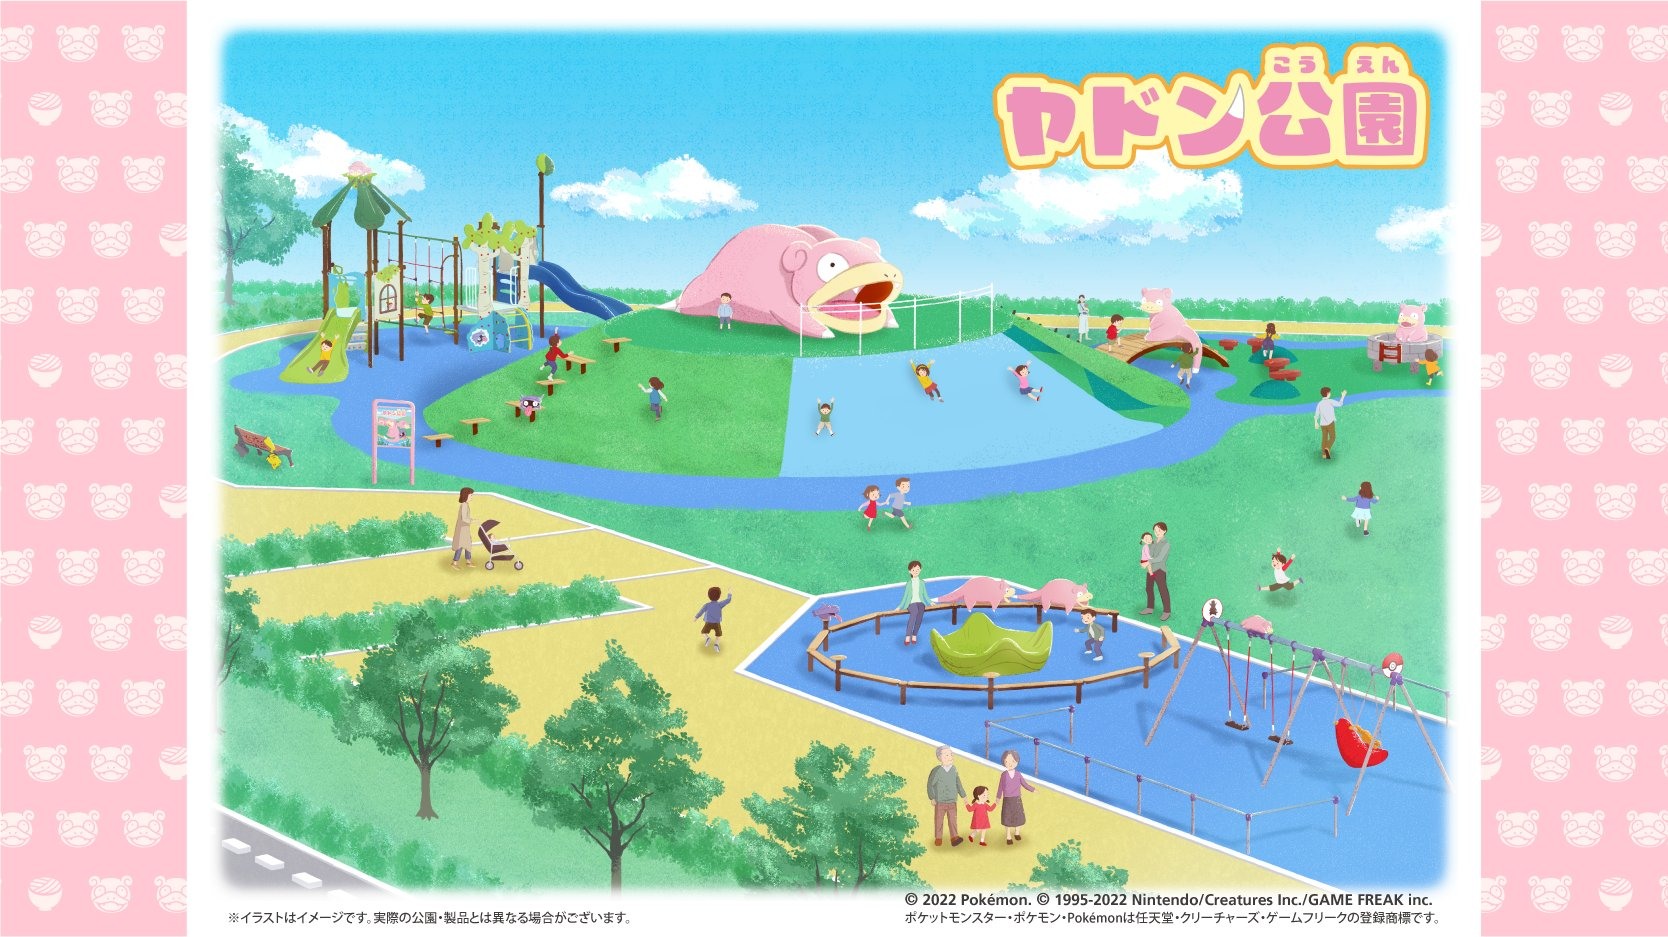 日本香川县与《宝可梦》合作设立「呆呆兽公园」预计 2023 年 4 月开幕插图